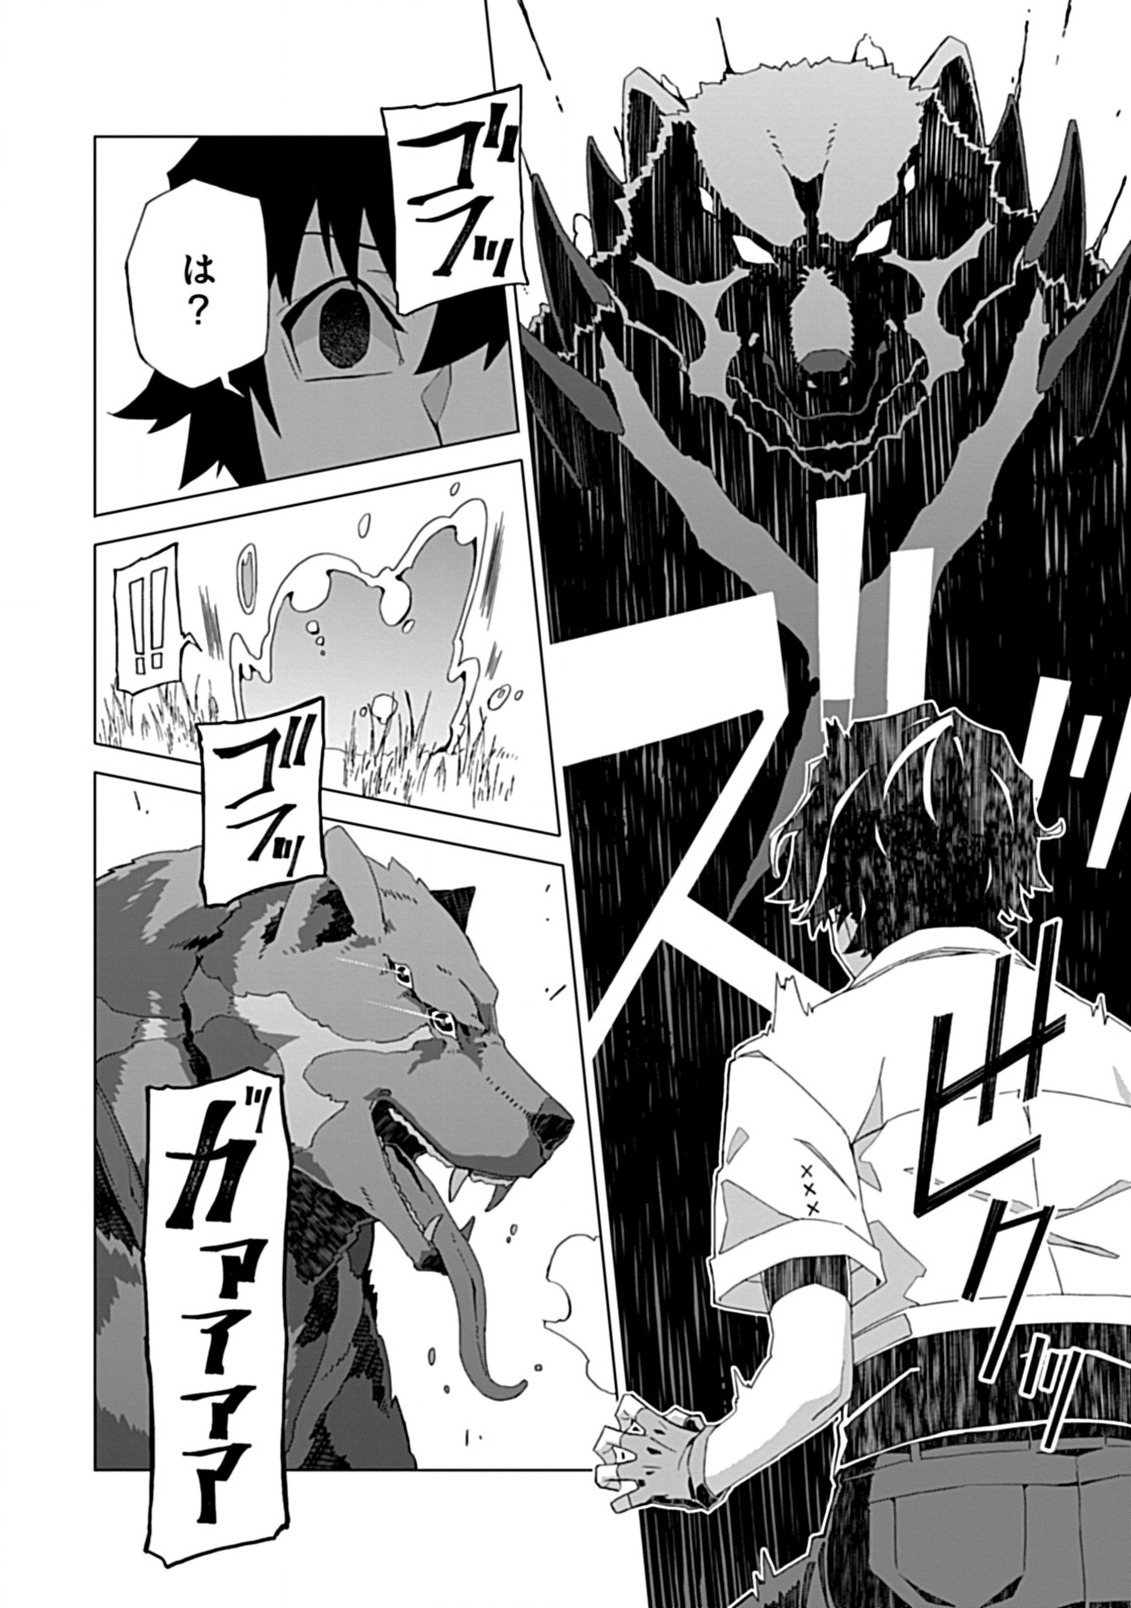 Haganezuka derrotou o Gyokko com a sua concentração suprema #anime #ot